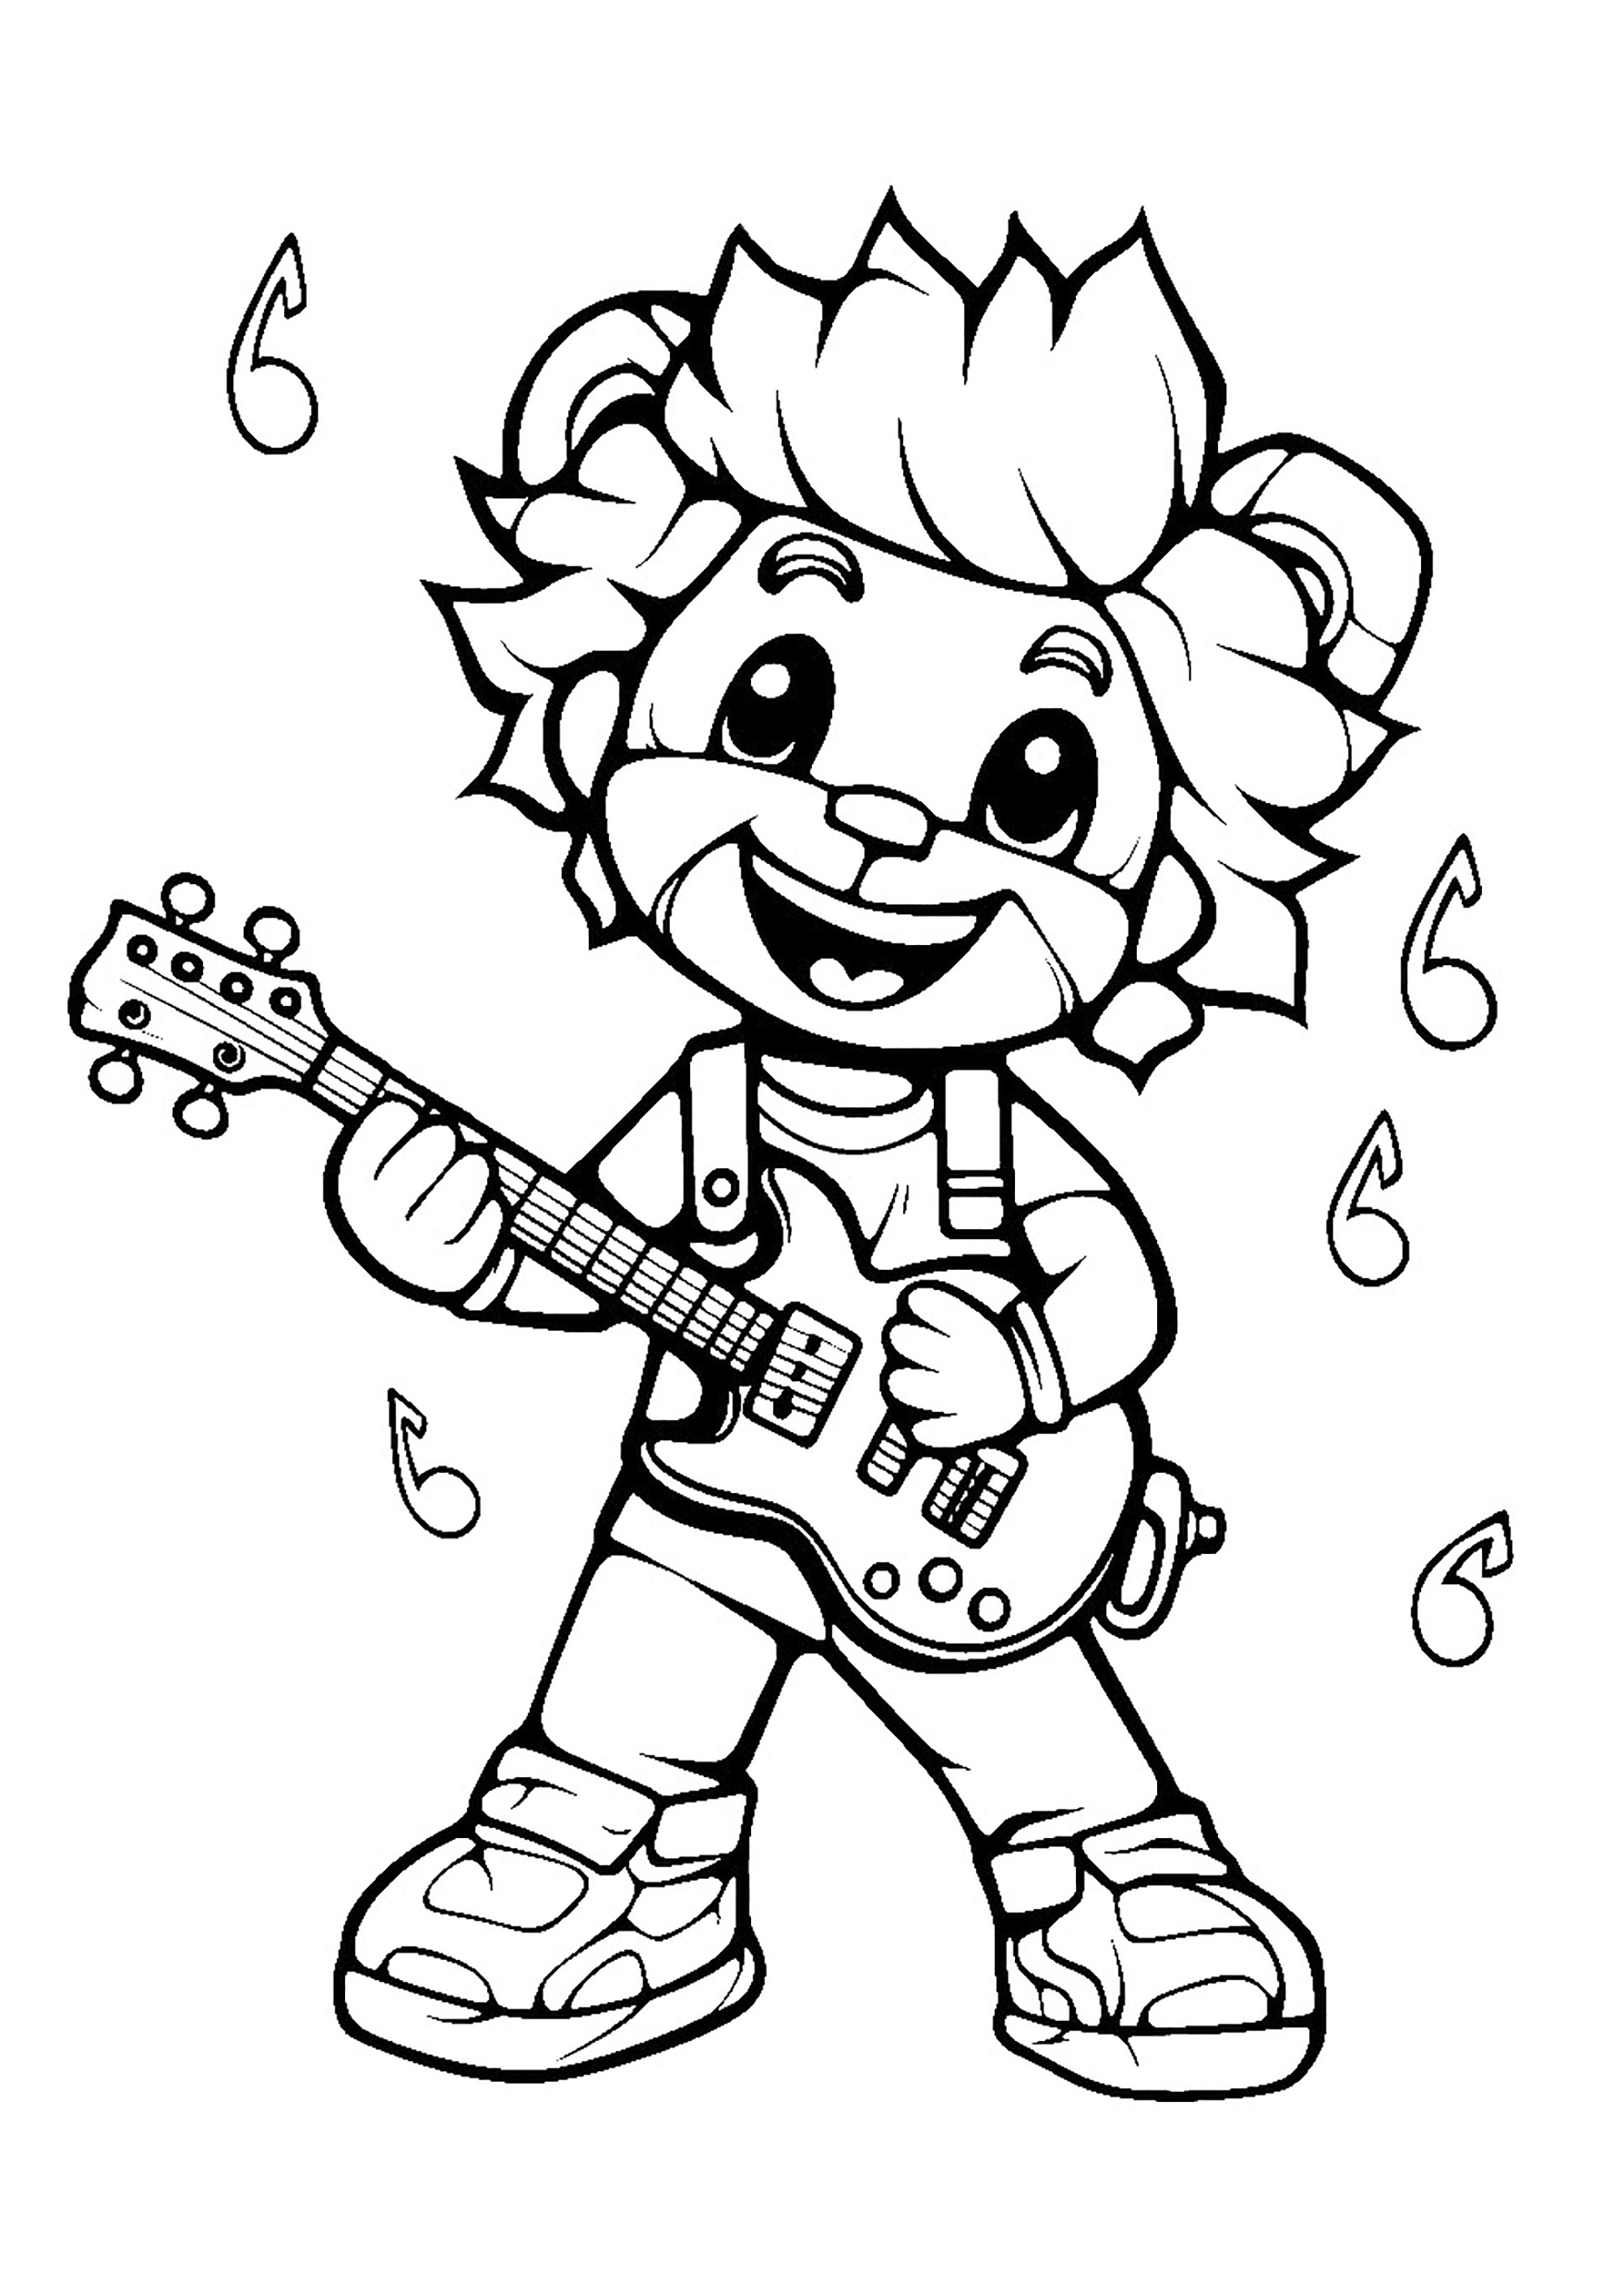 Leão na guitarra (inspirado nas personagens de FNAF)